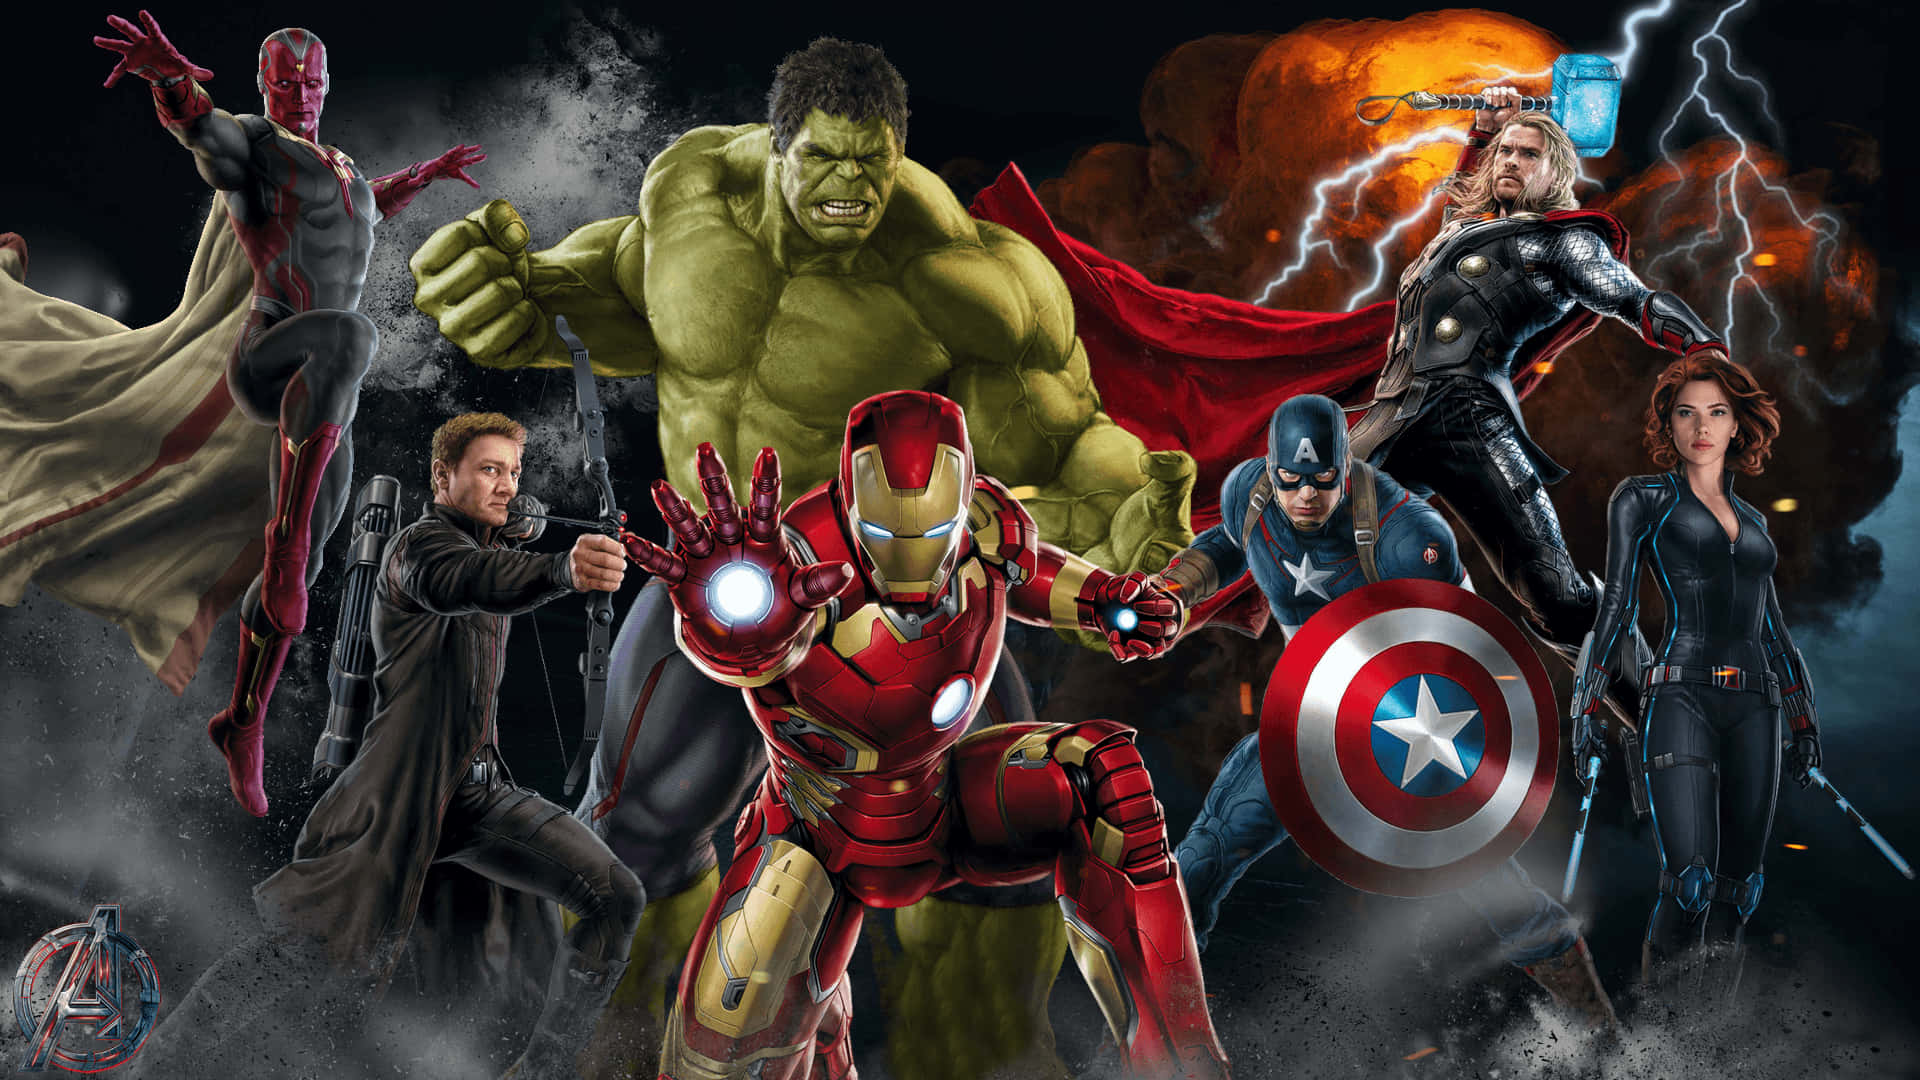 Iron Man beskytter verden som en del af The Avengers squad. Wallpaper